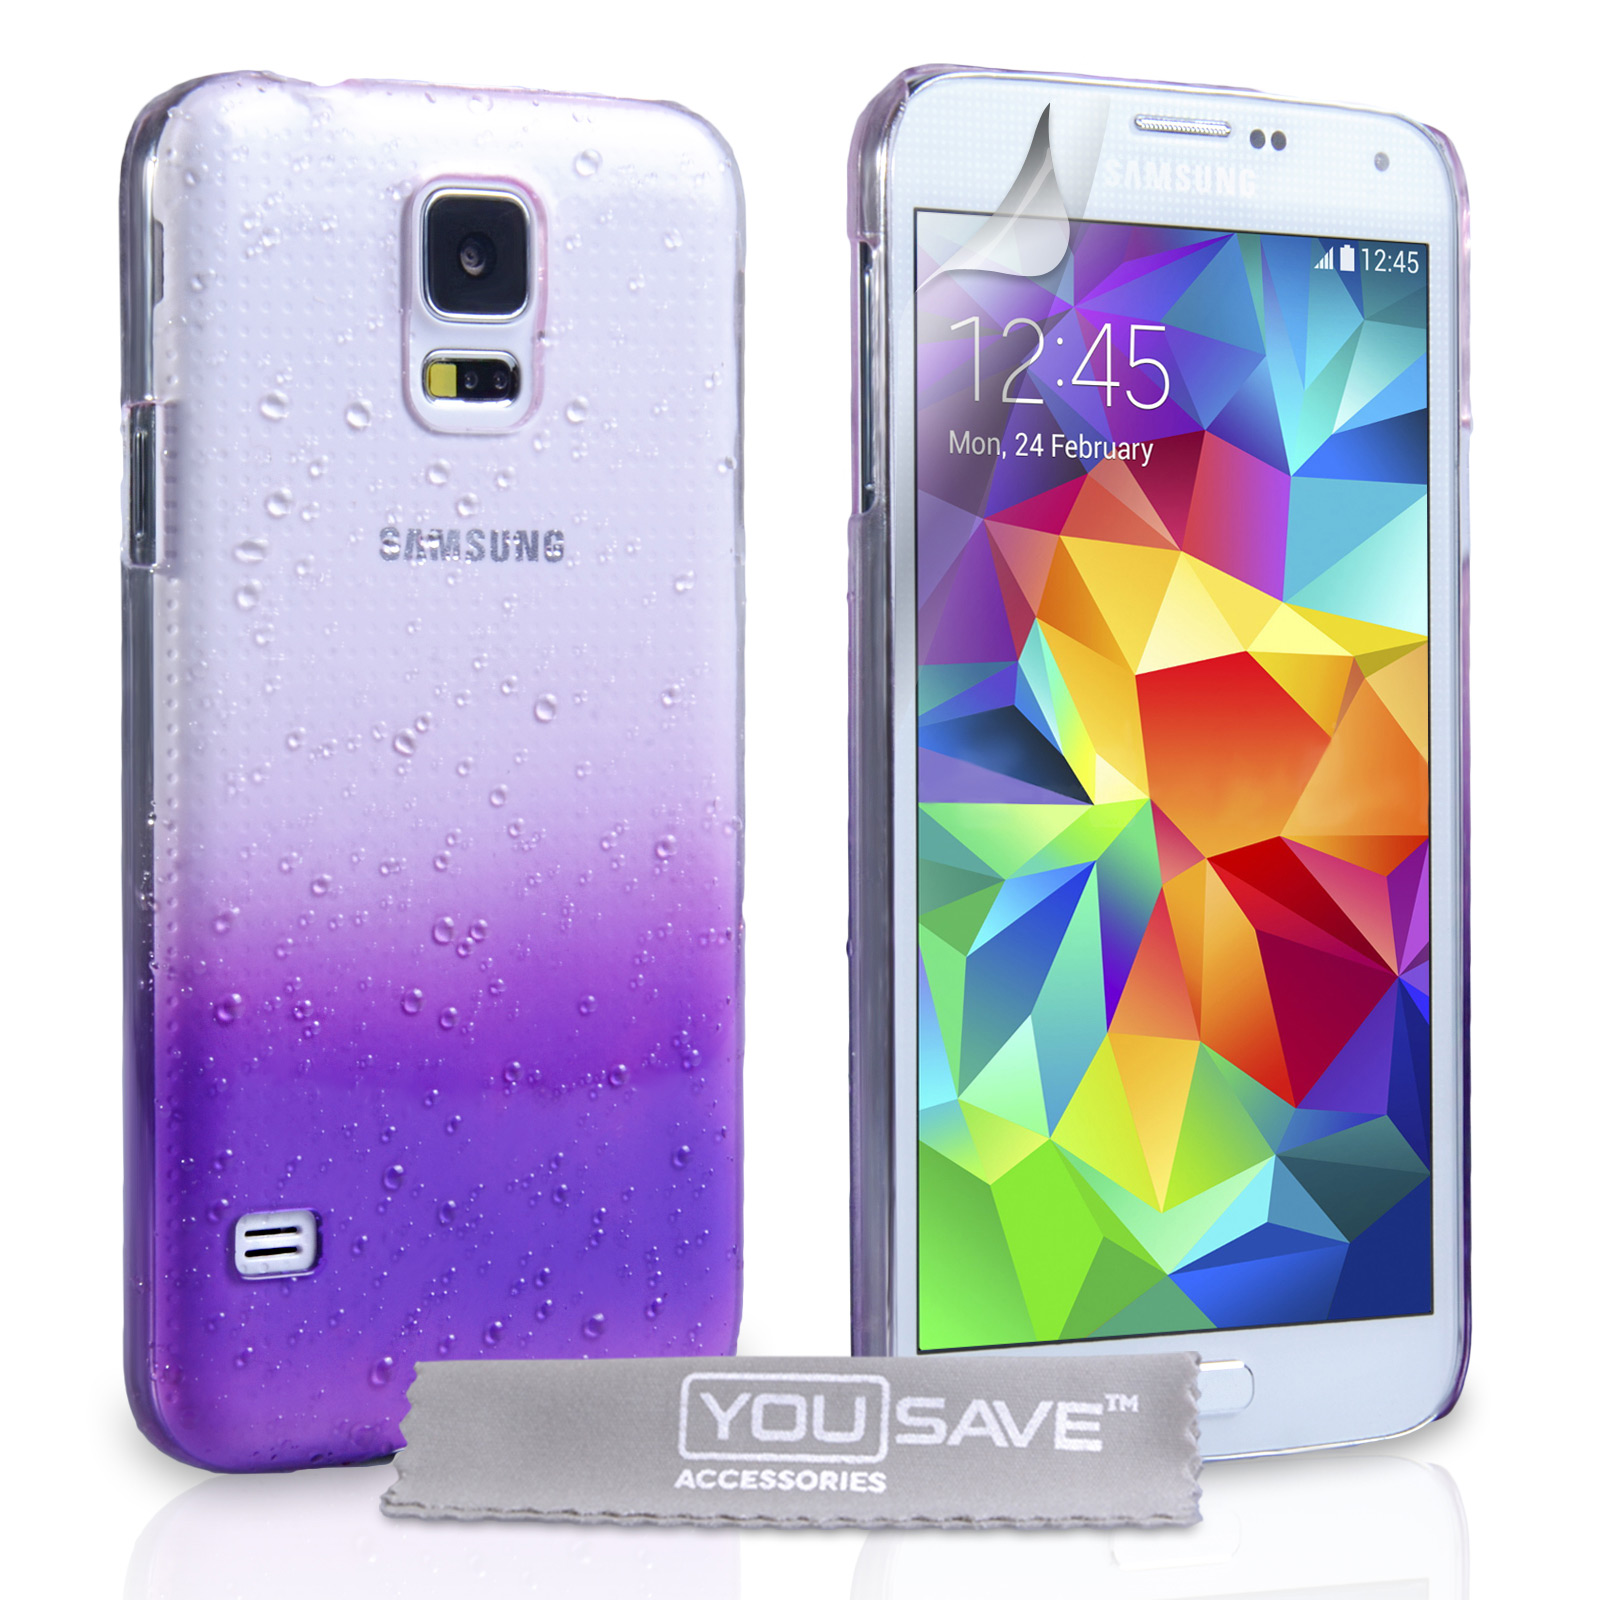 YouSave Samsung Galaxy S5 Raindrop Hard Case - Purple-Clear